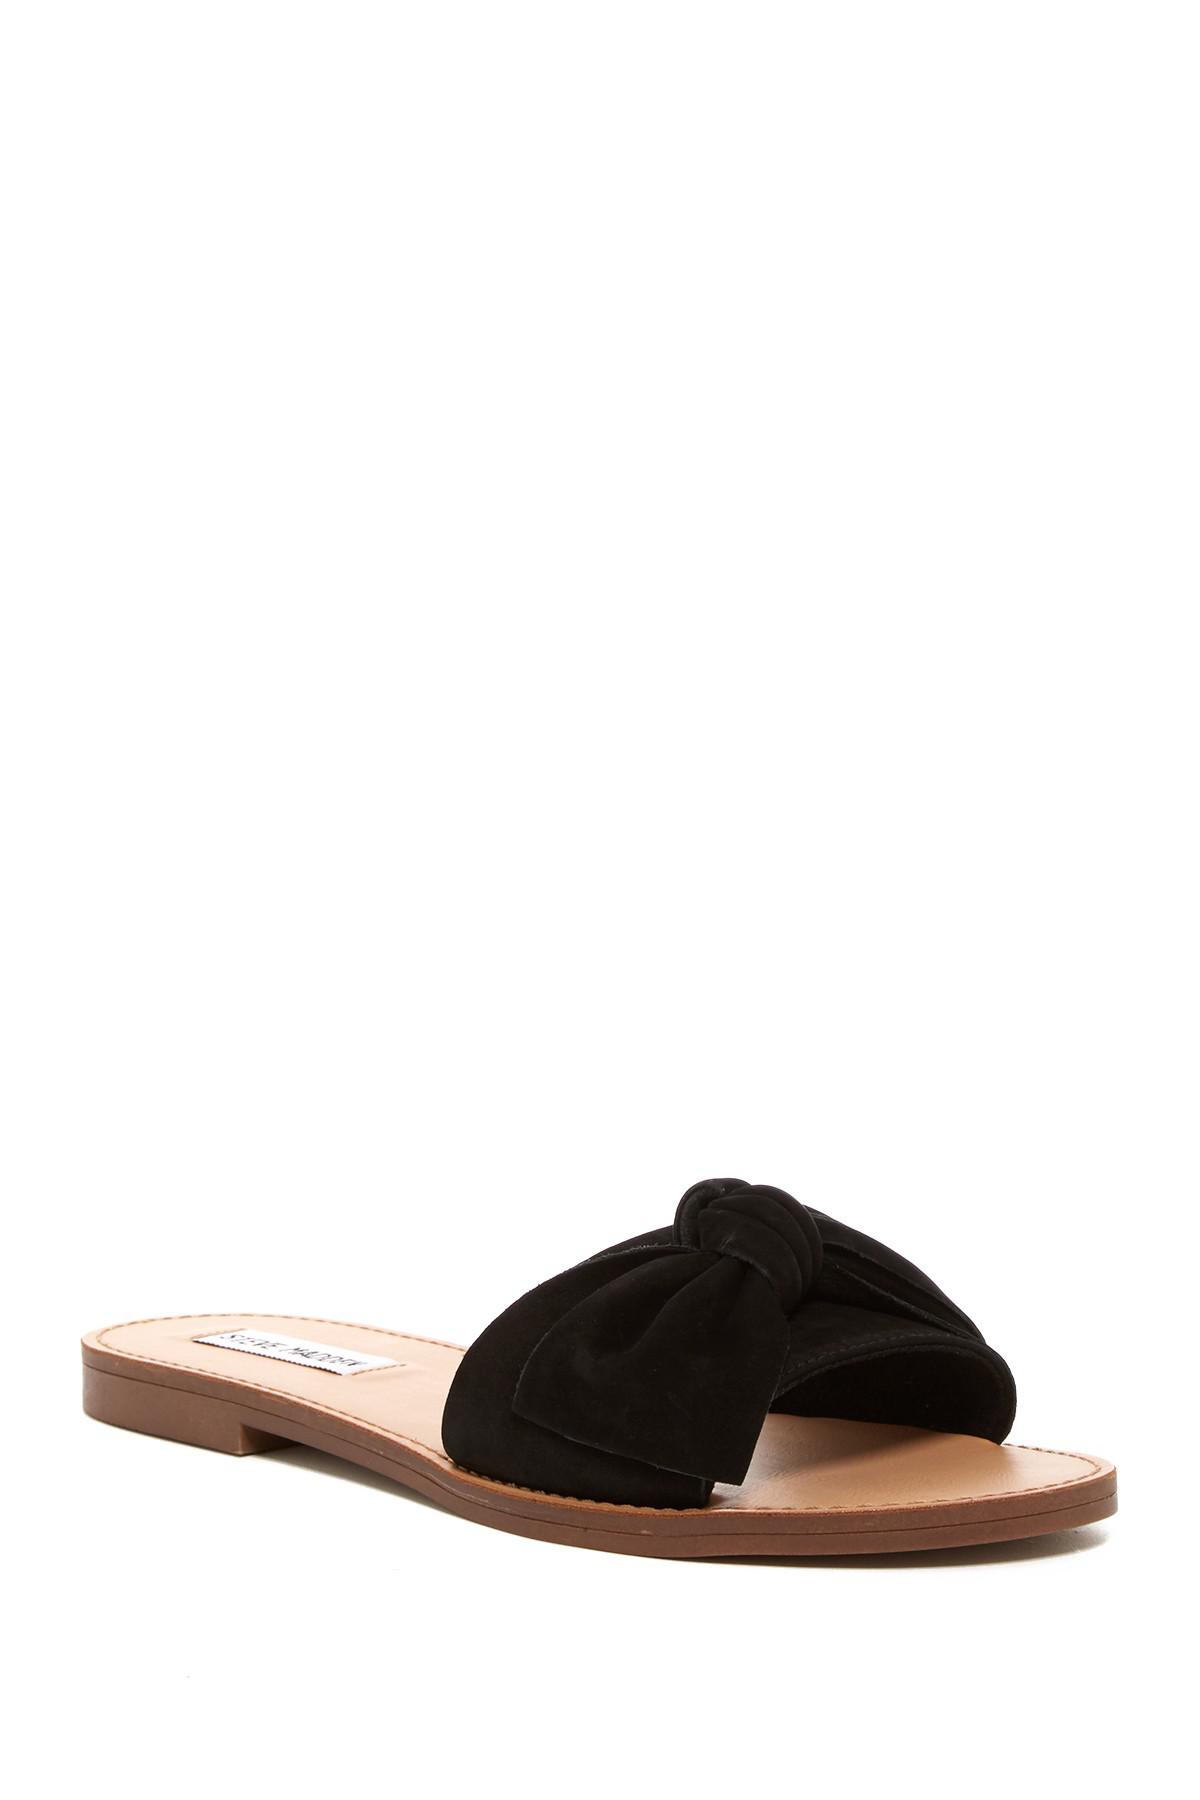 Steve Madden Diora Bow Slid Sandal in Black | Lyst